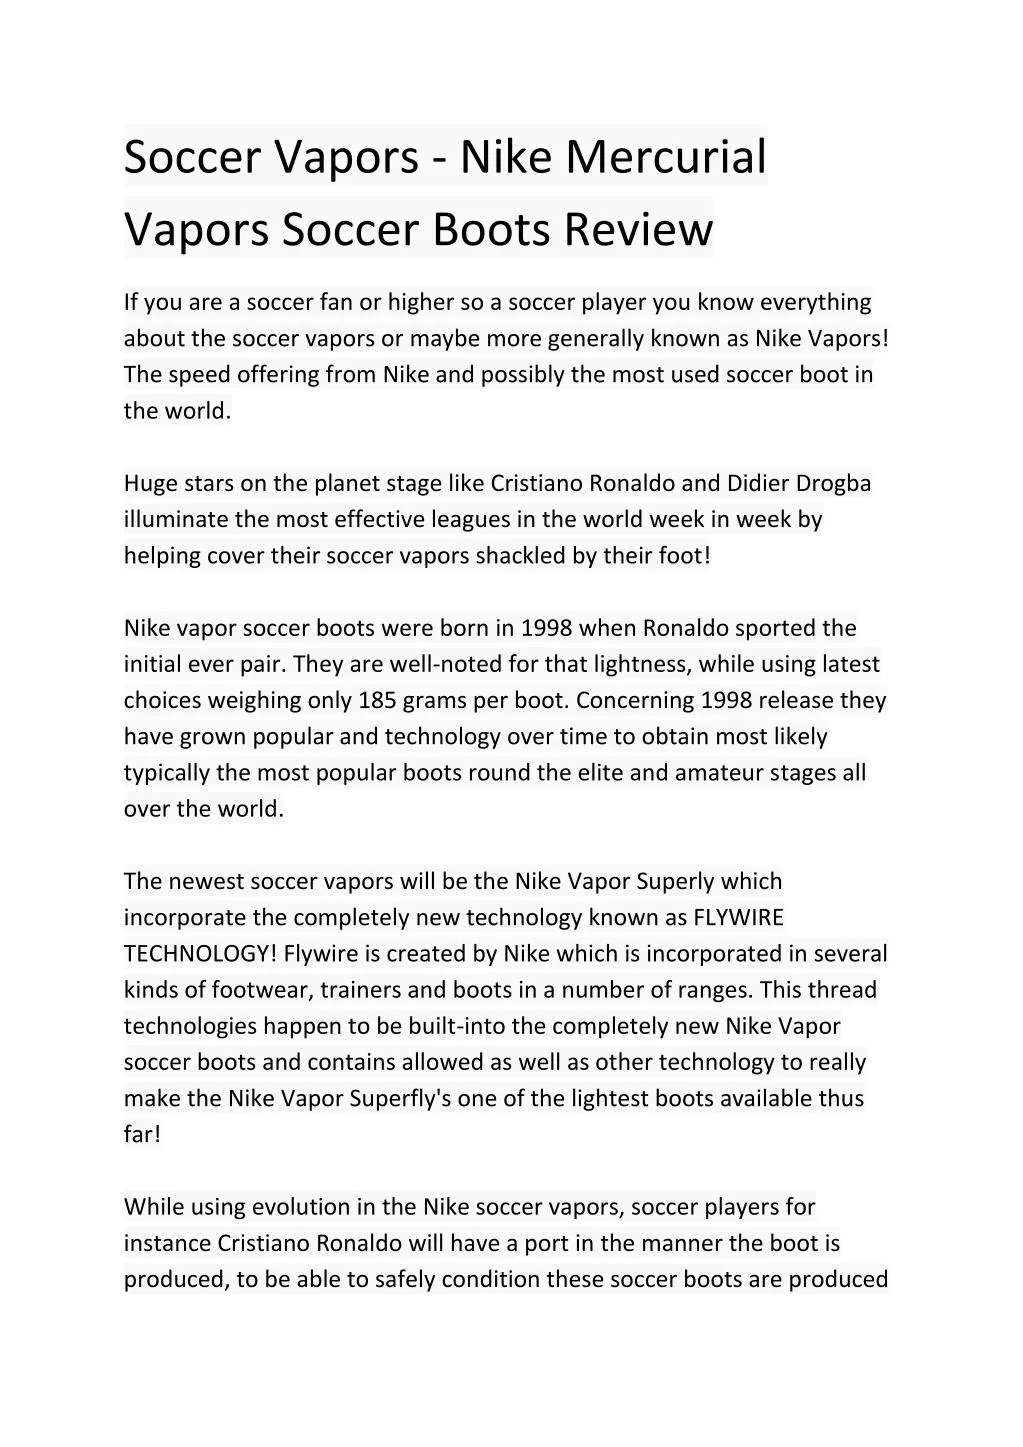 soccer vapors nike mercurial vapors soccer boots